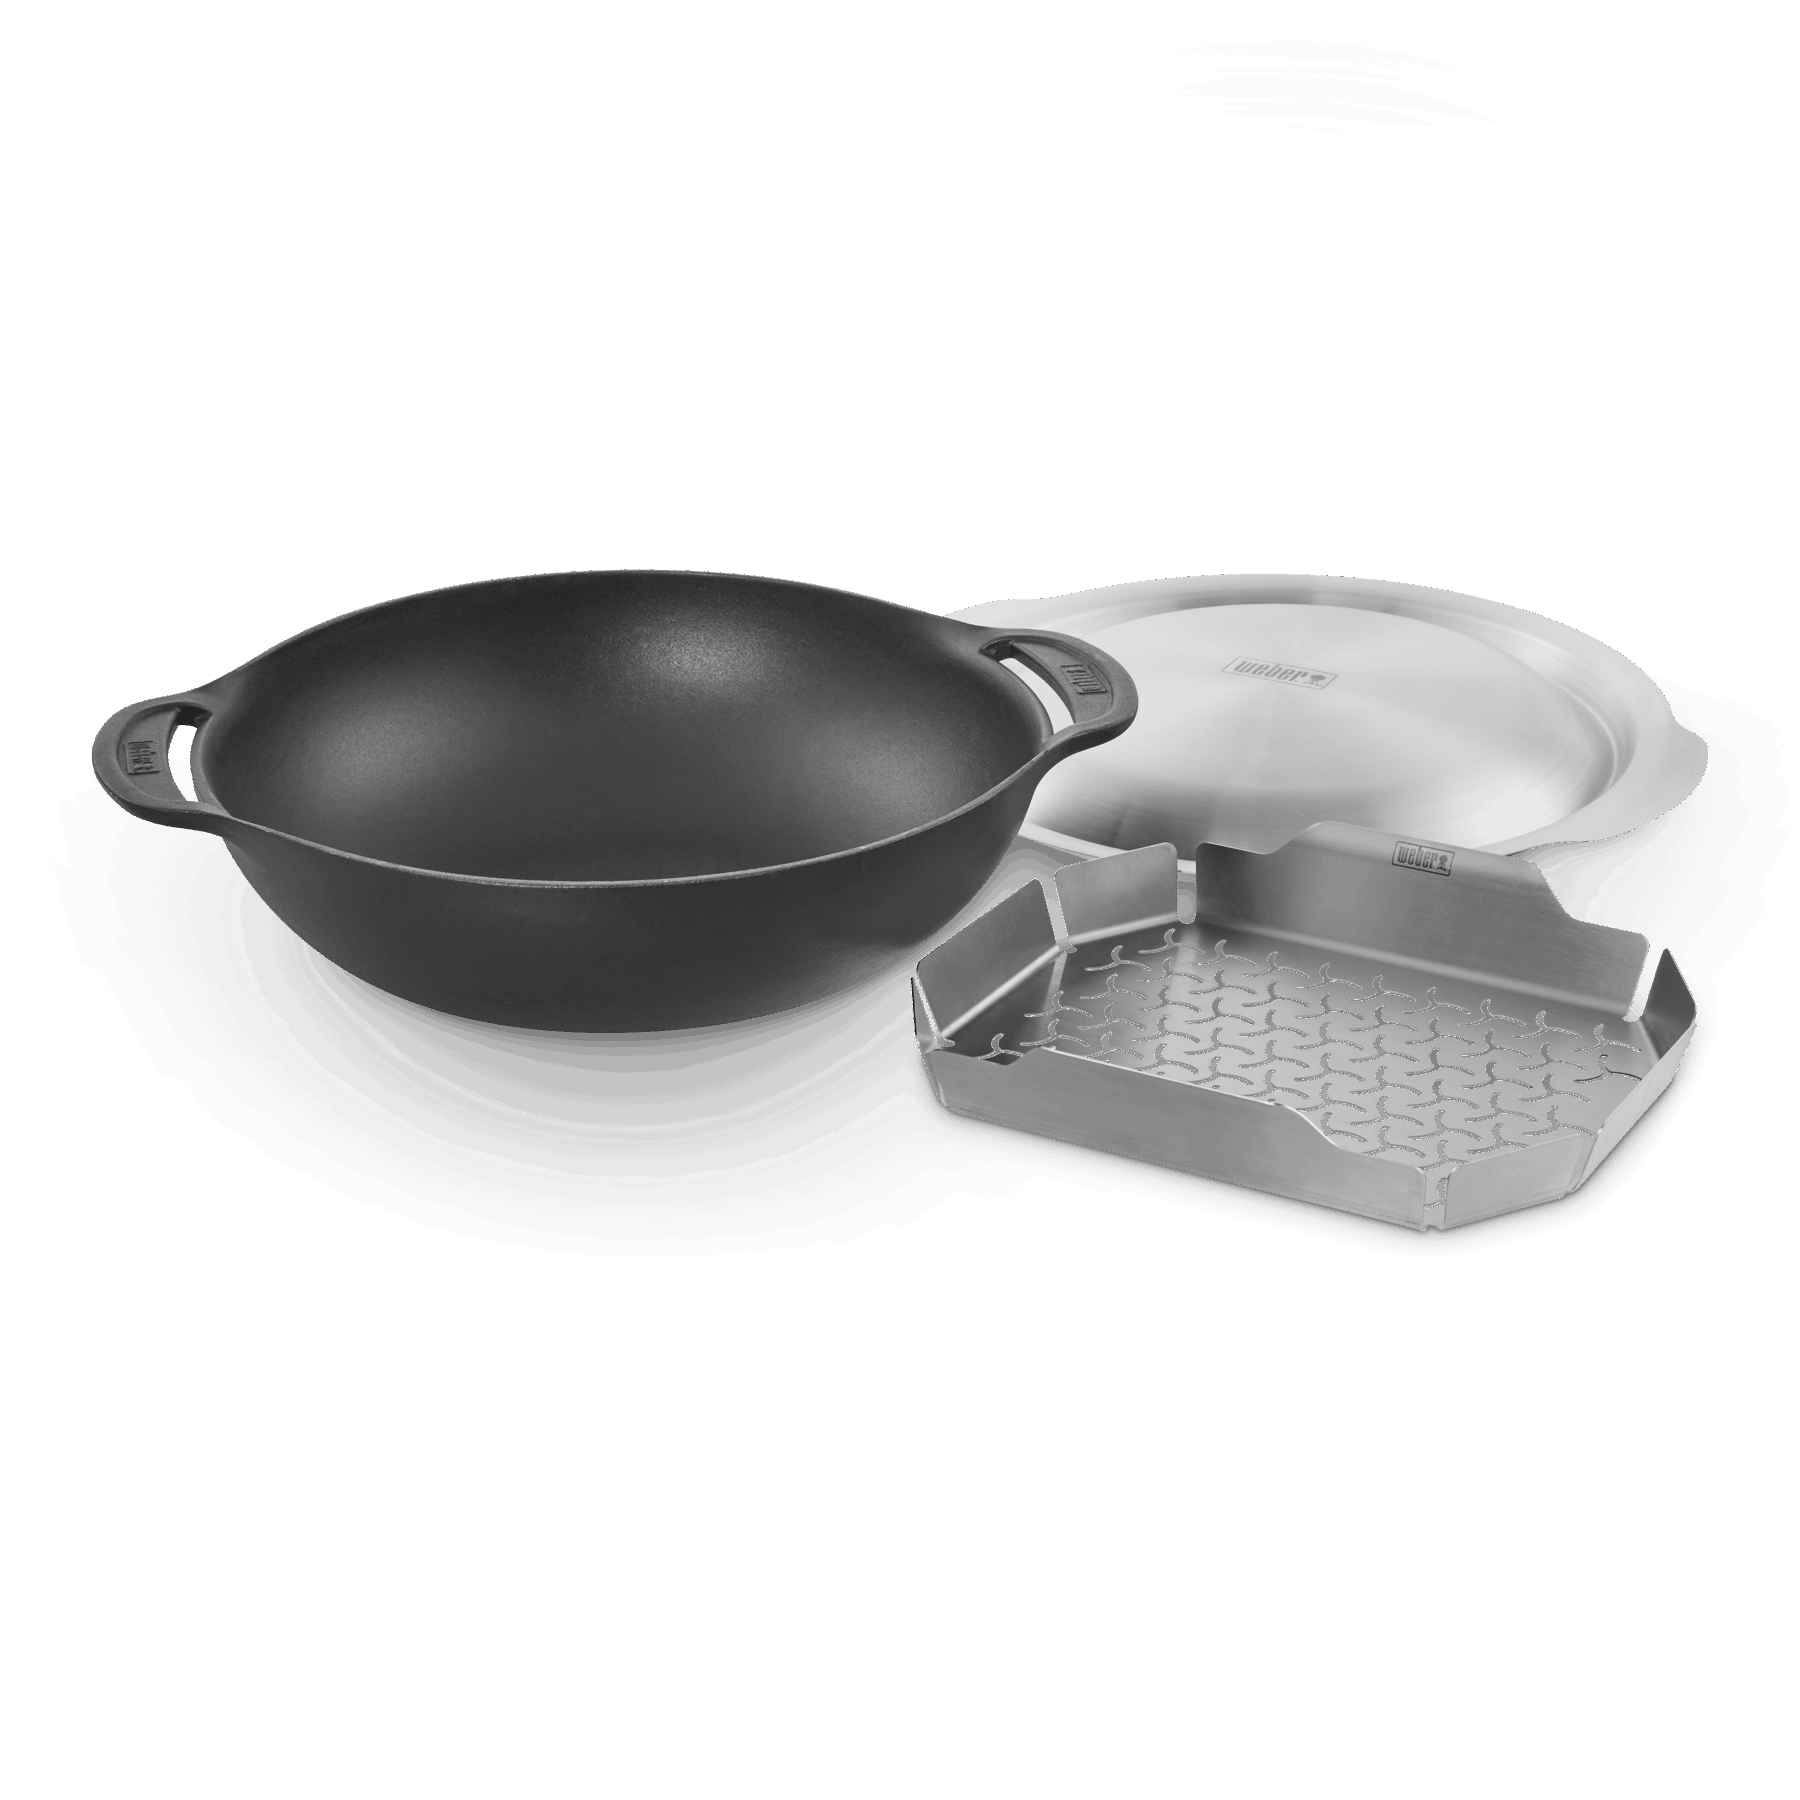 Hochwertige Wok-Pfanne aus Stahl für WOKN BBQ Set Wok mit Holzgriff 35cm Durchmesser Moesta-BBQ 10121 